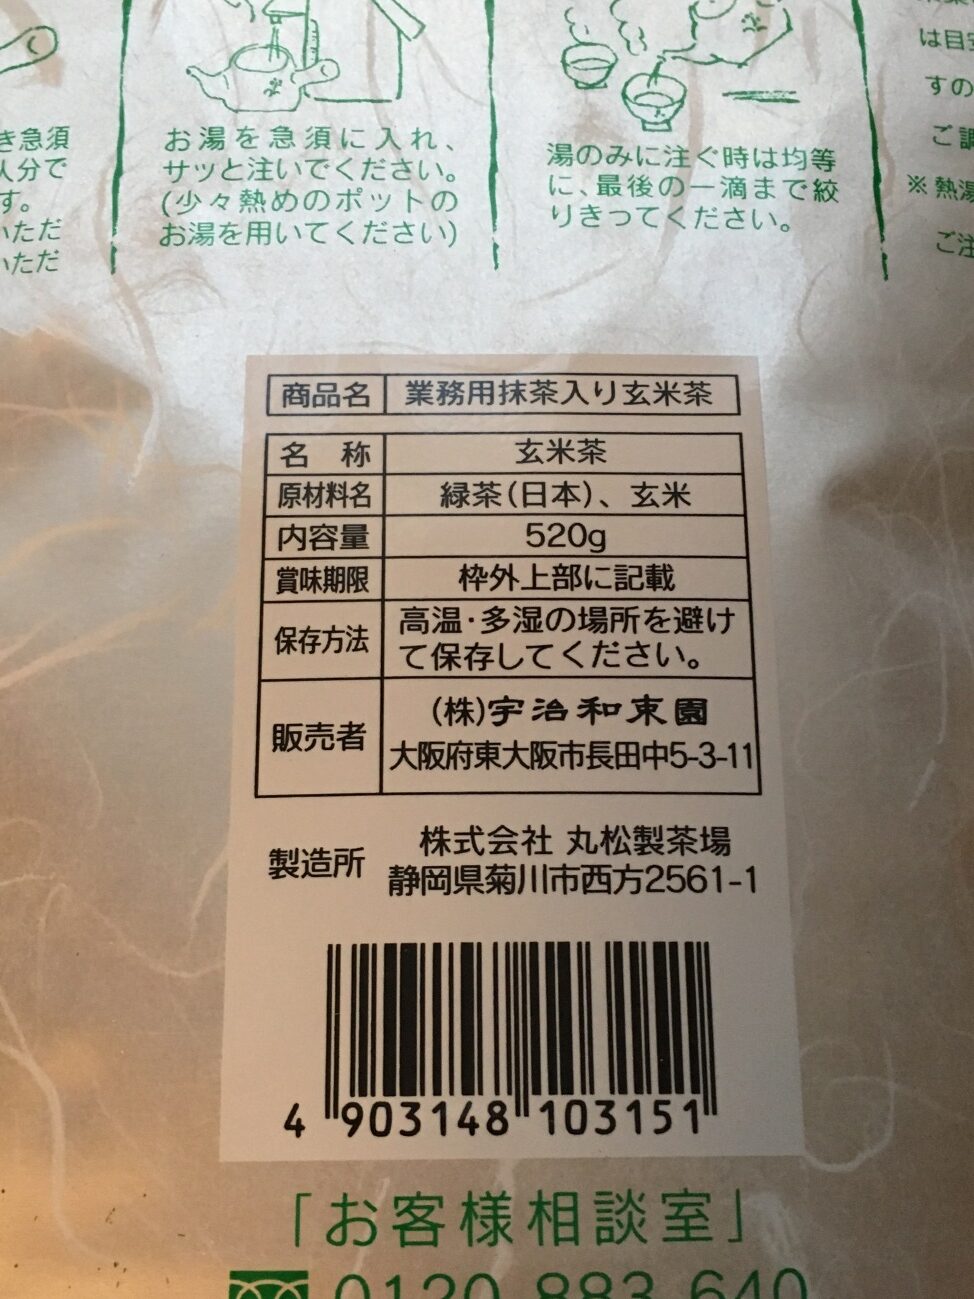 業務スーパーの玄米茶の原材料名と製造者名の表記